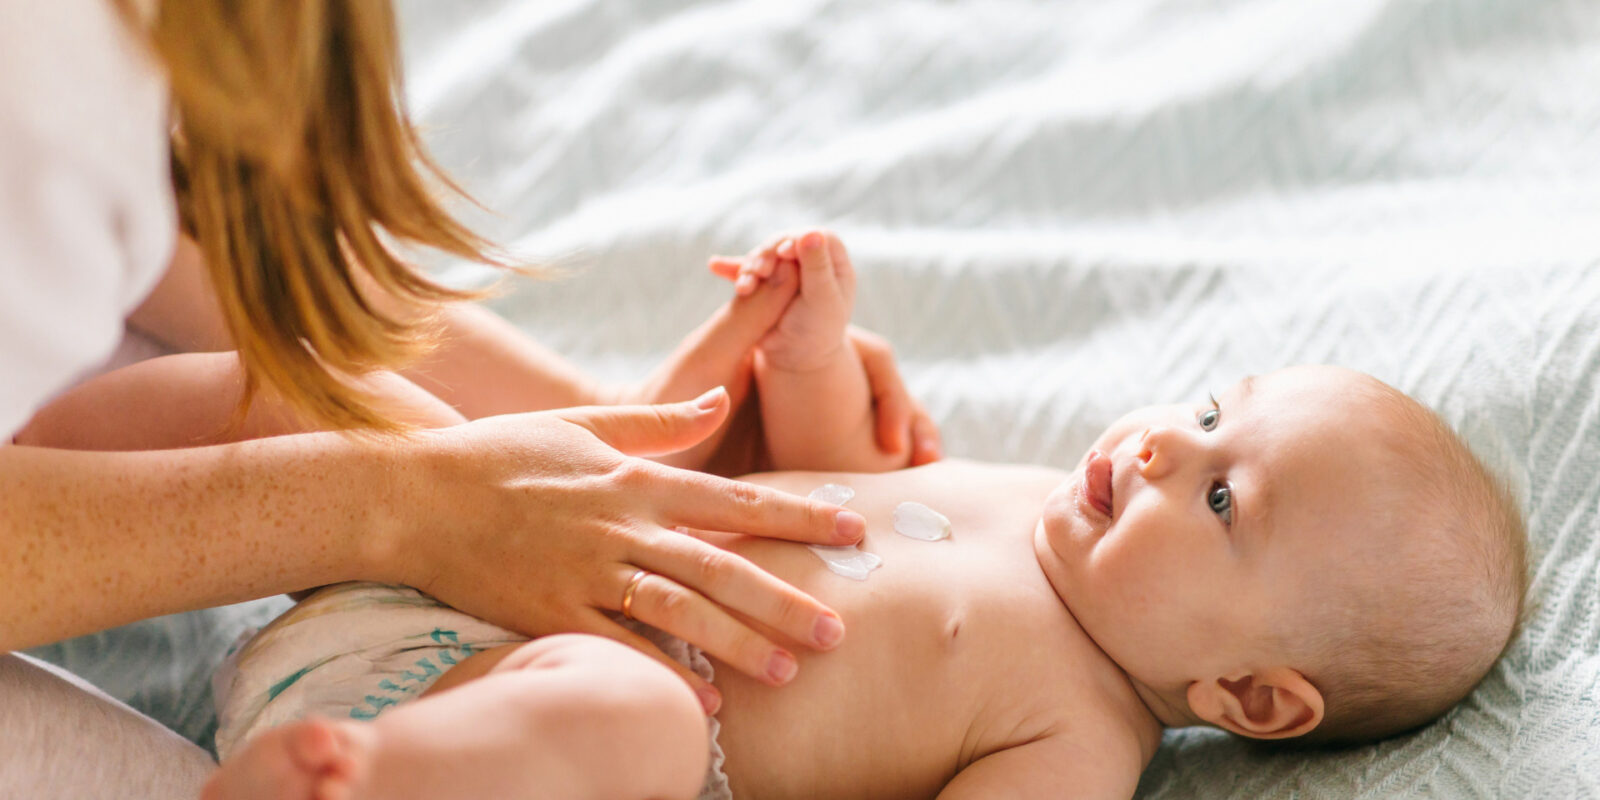 Hautpflege bei Neugeborenen Darauf sollten Eltern achten